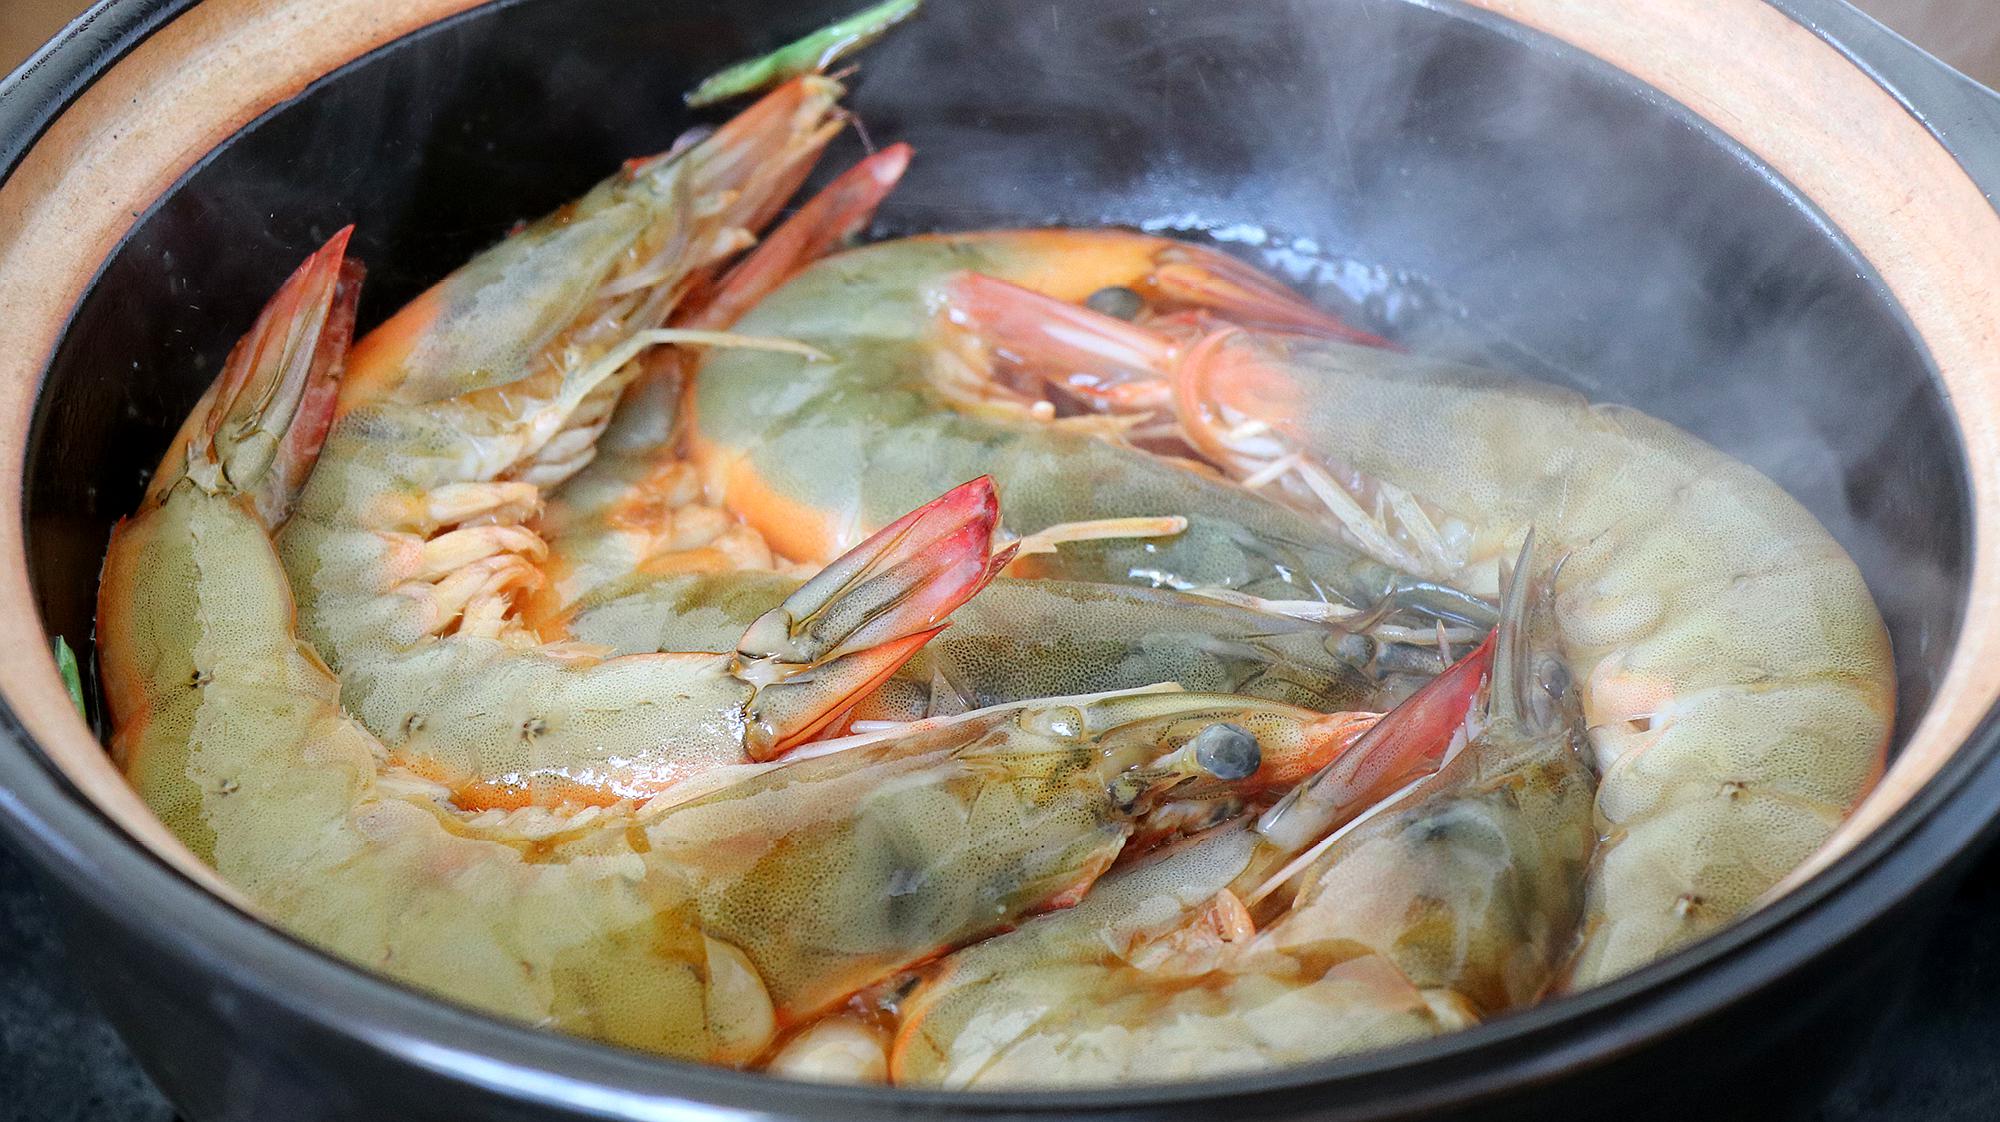 碳烤青虾 - 版纳告庄曼西贡餐厅东南亚米其林特色美食